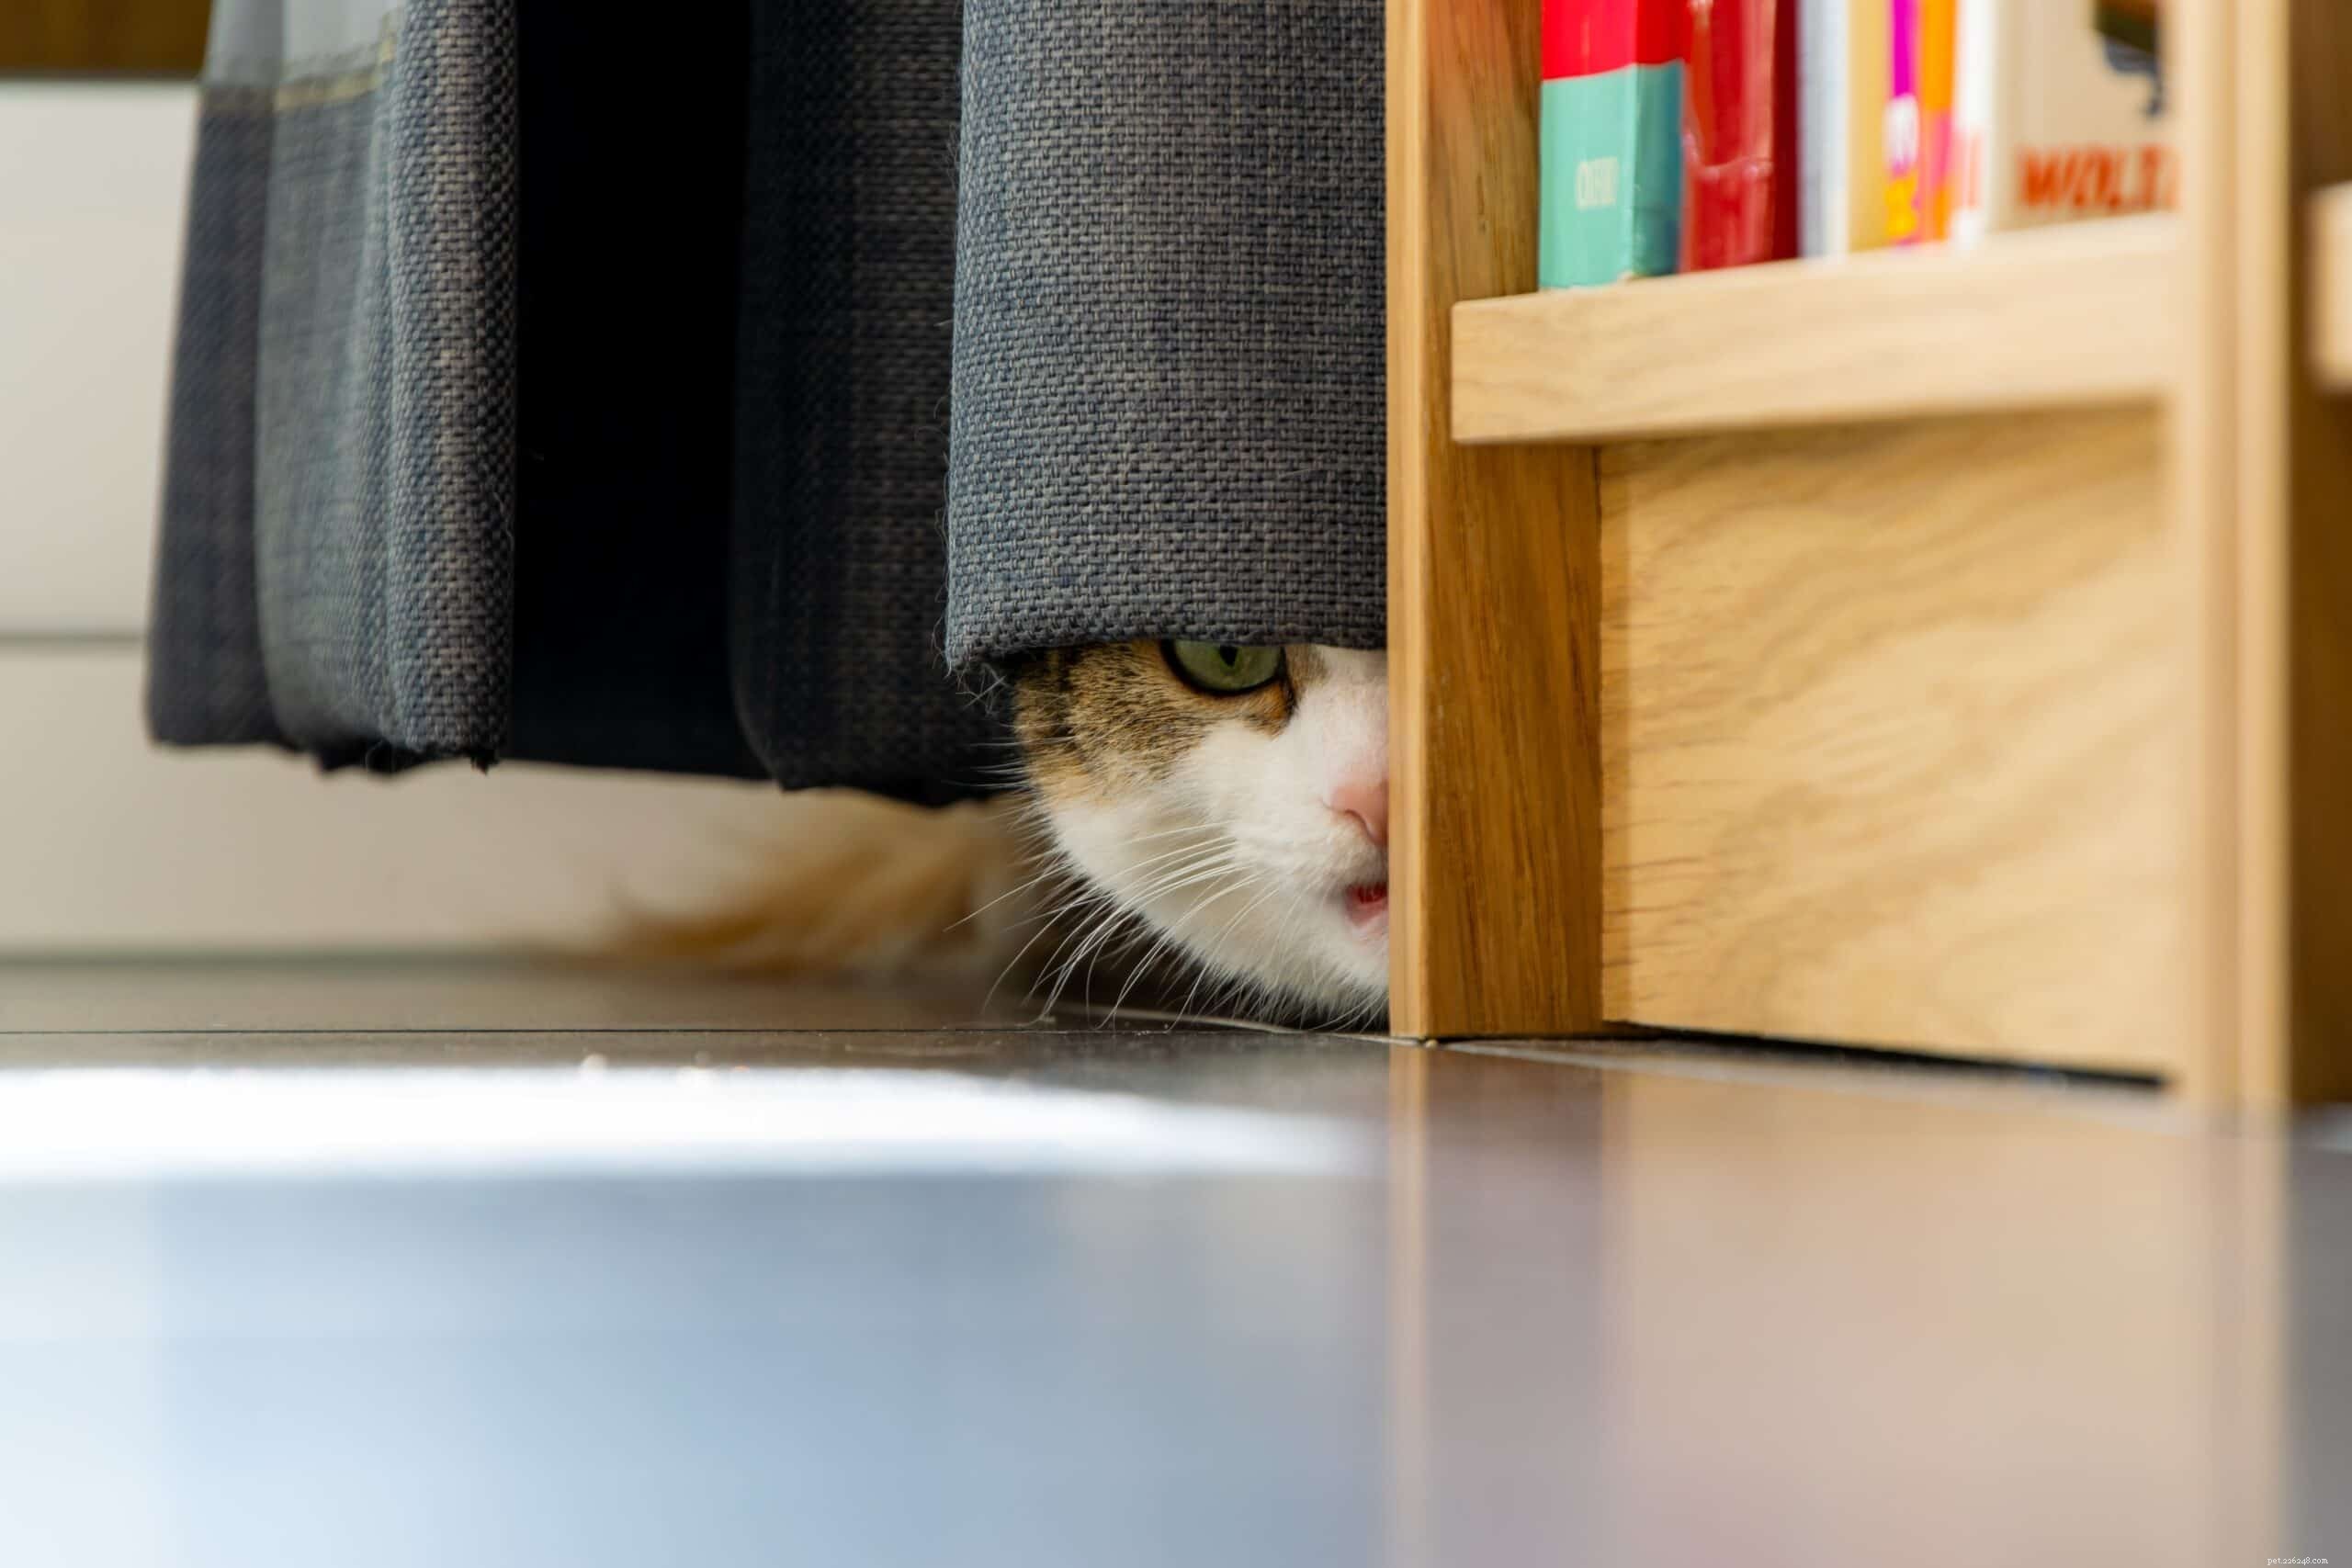 Por que os gatos têm medo de barulhos altos?